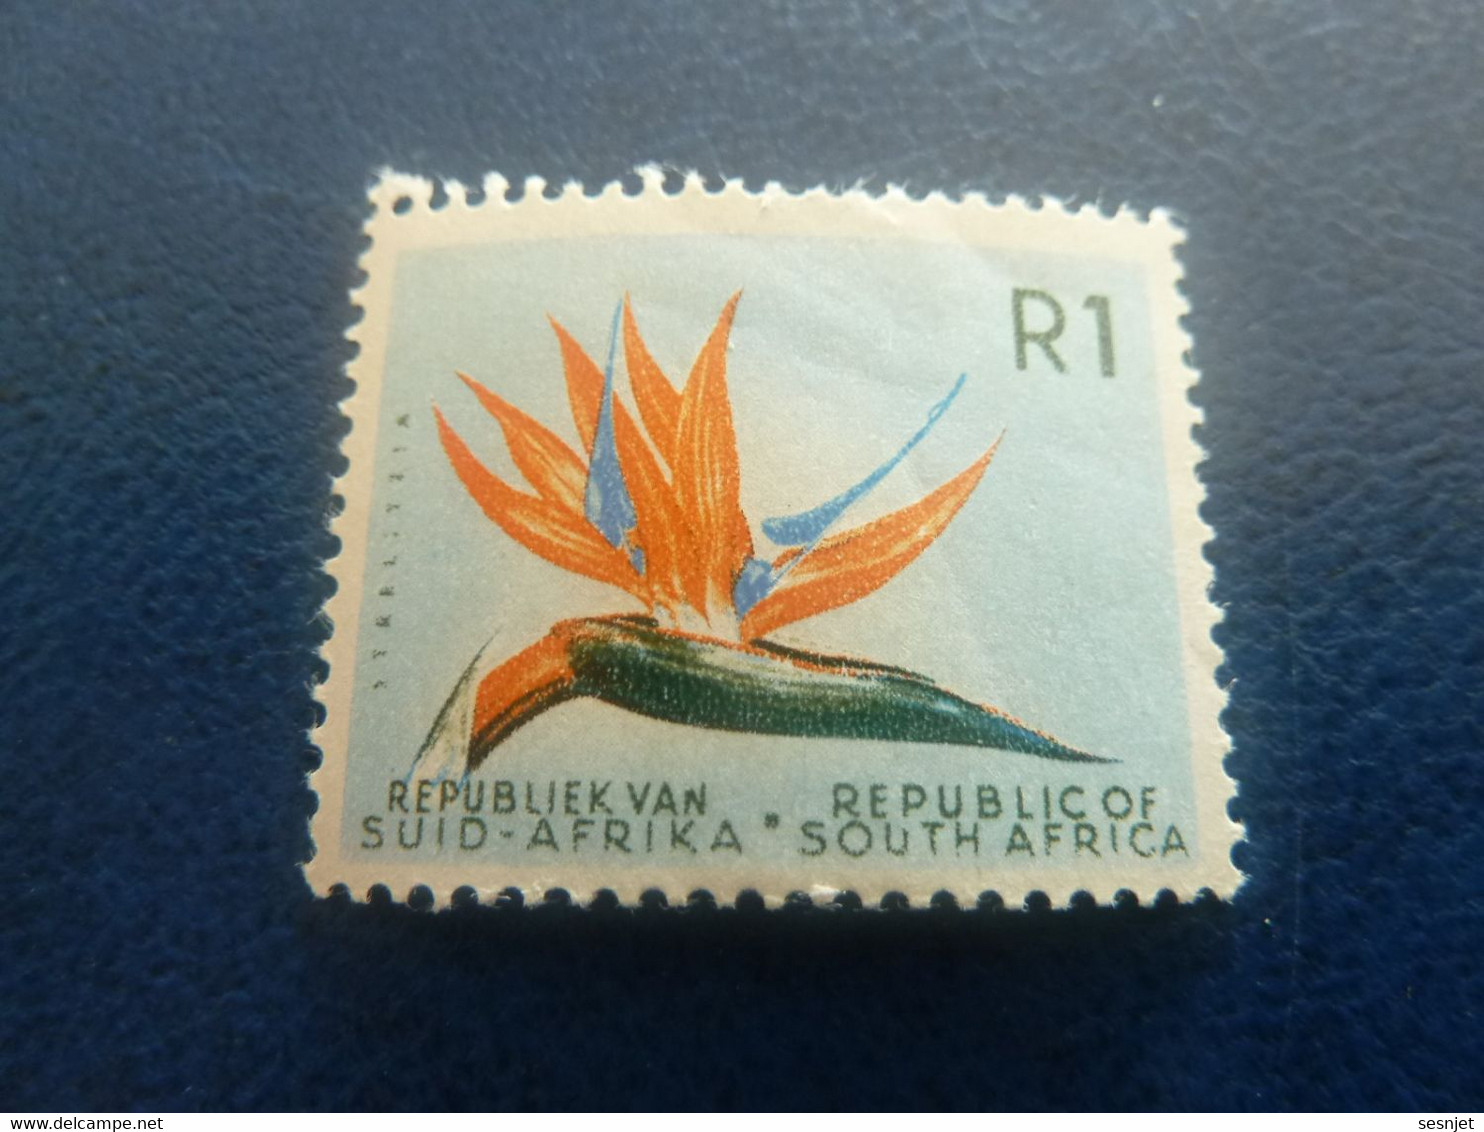 Republiek Van Suid-Africa - Botanique - R 1 - Multicolore - Neuf - - Ungebraucht